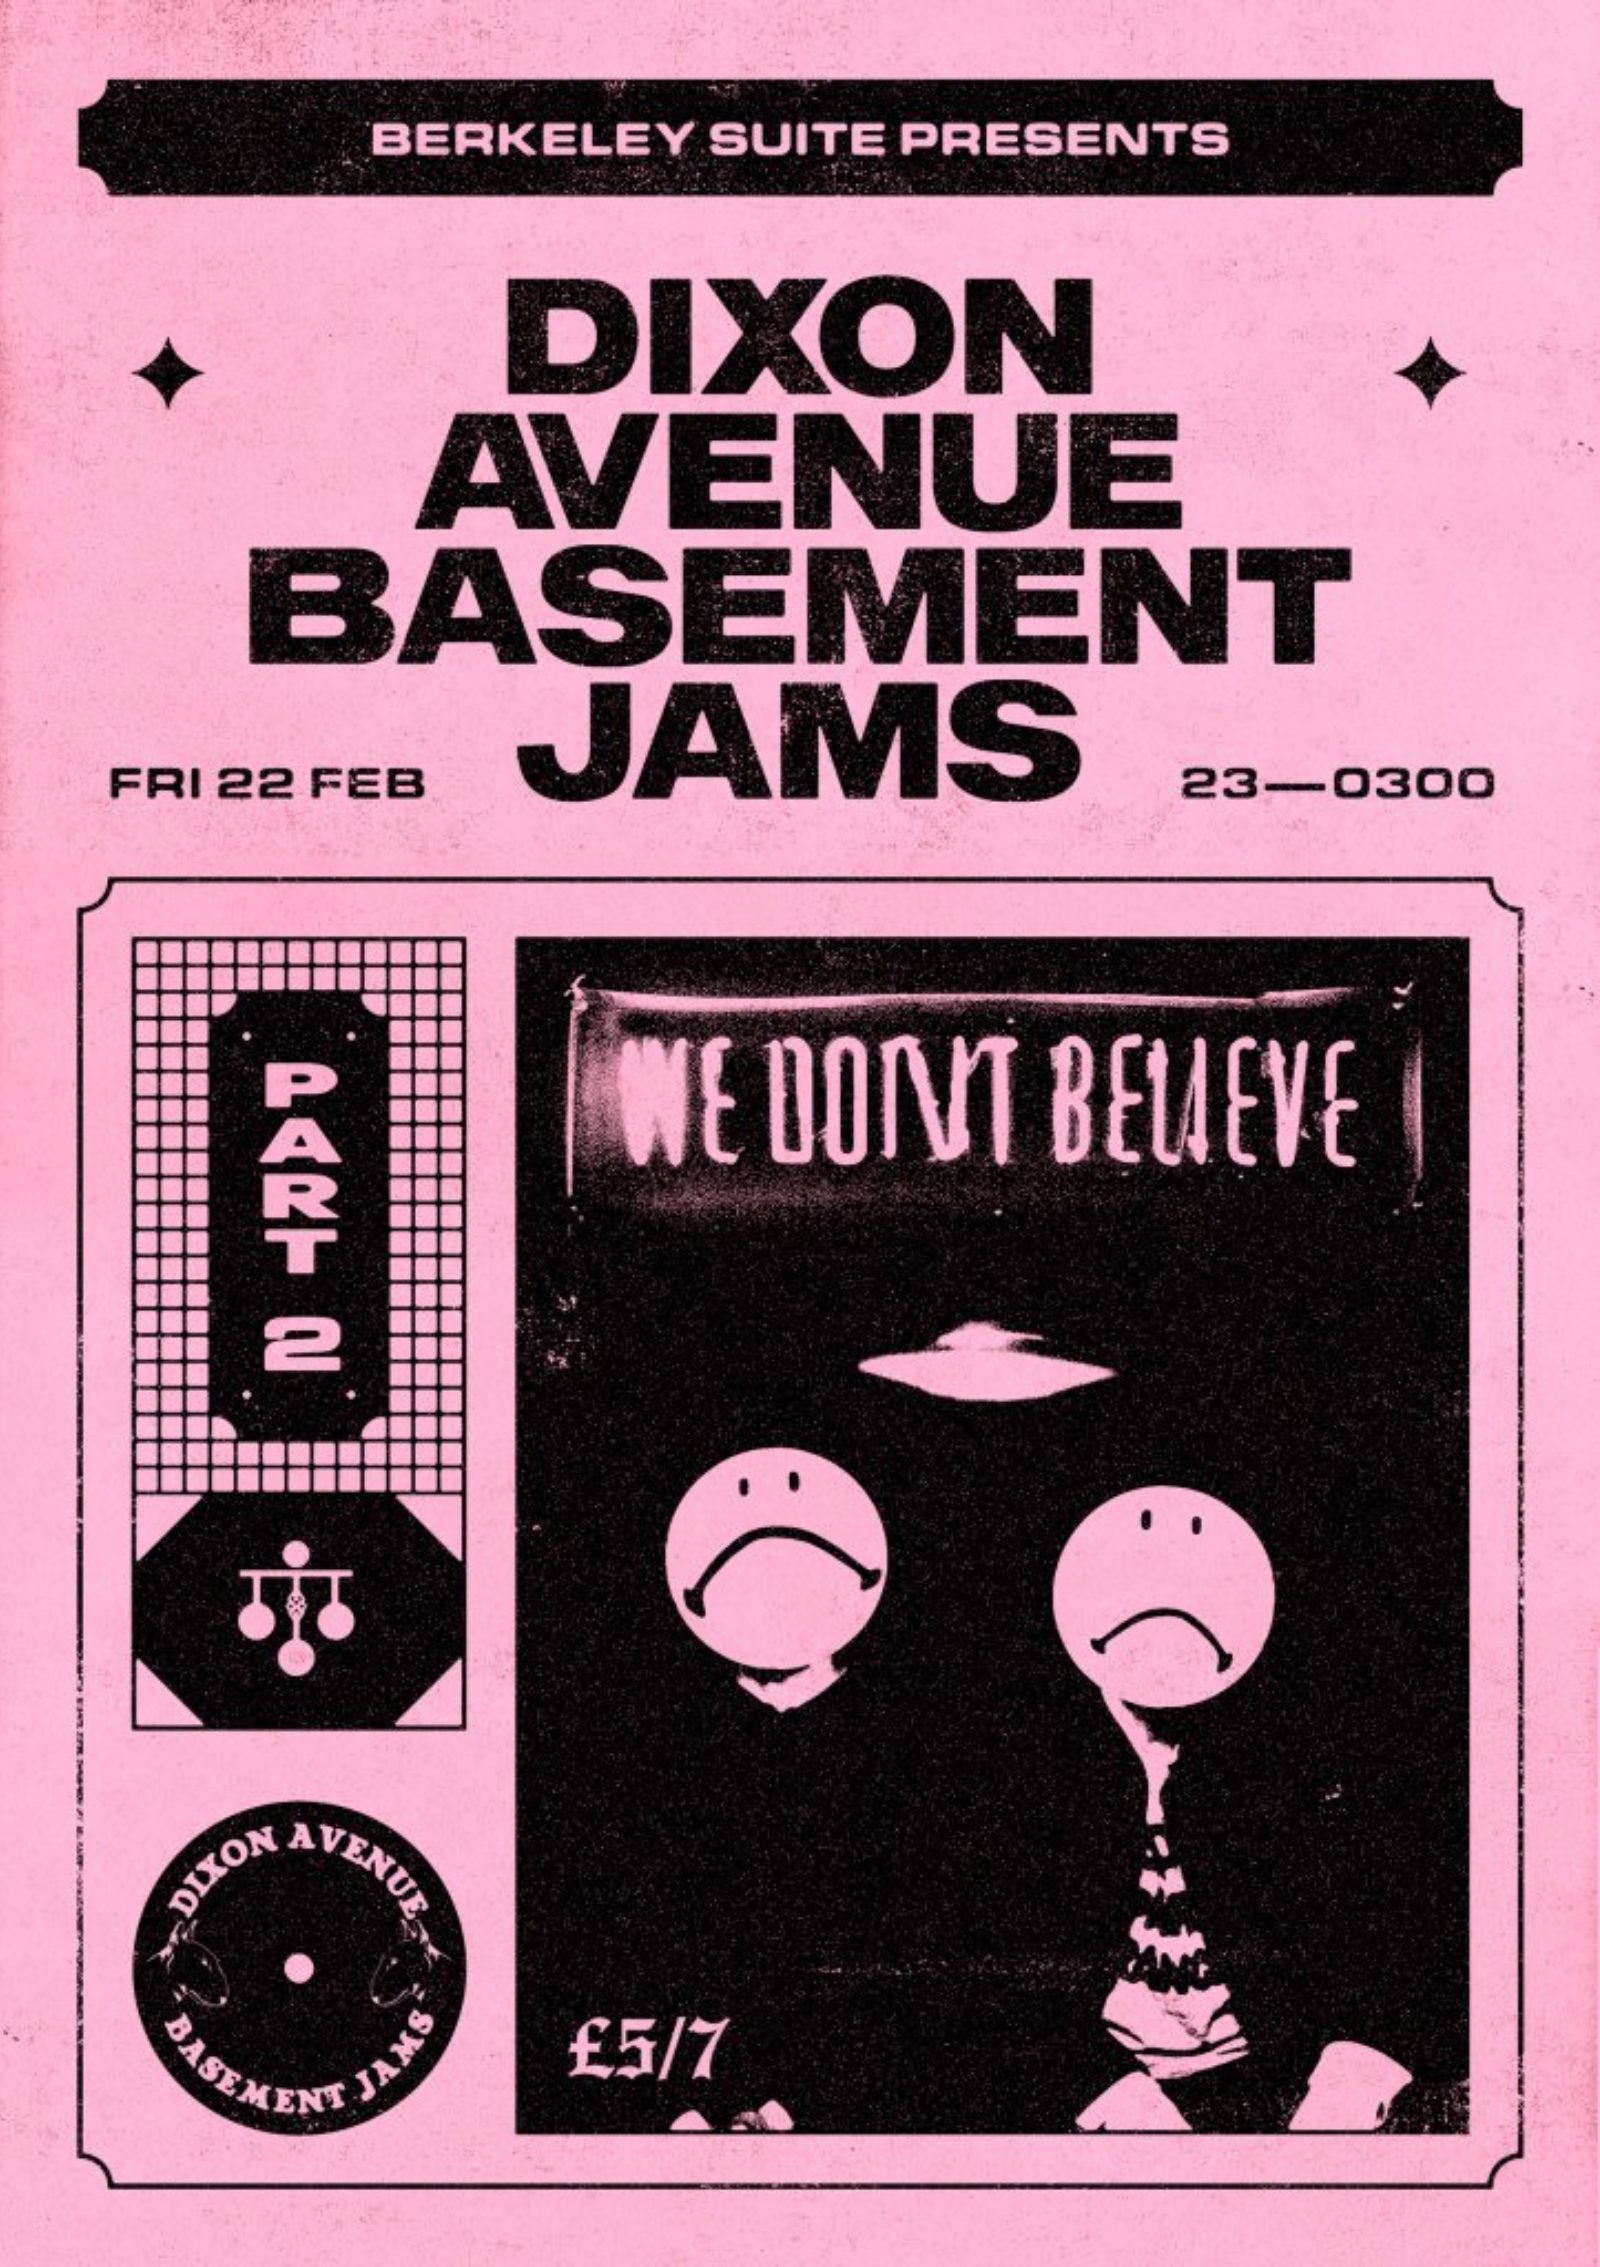 Dixon Avenue Basement Jams (all night long)